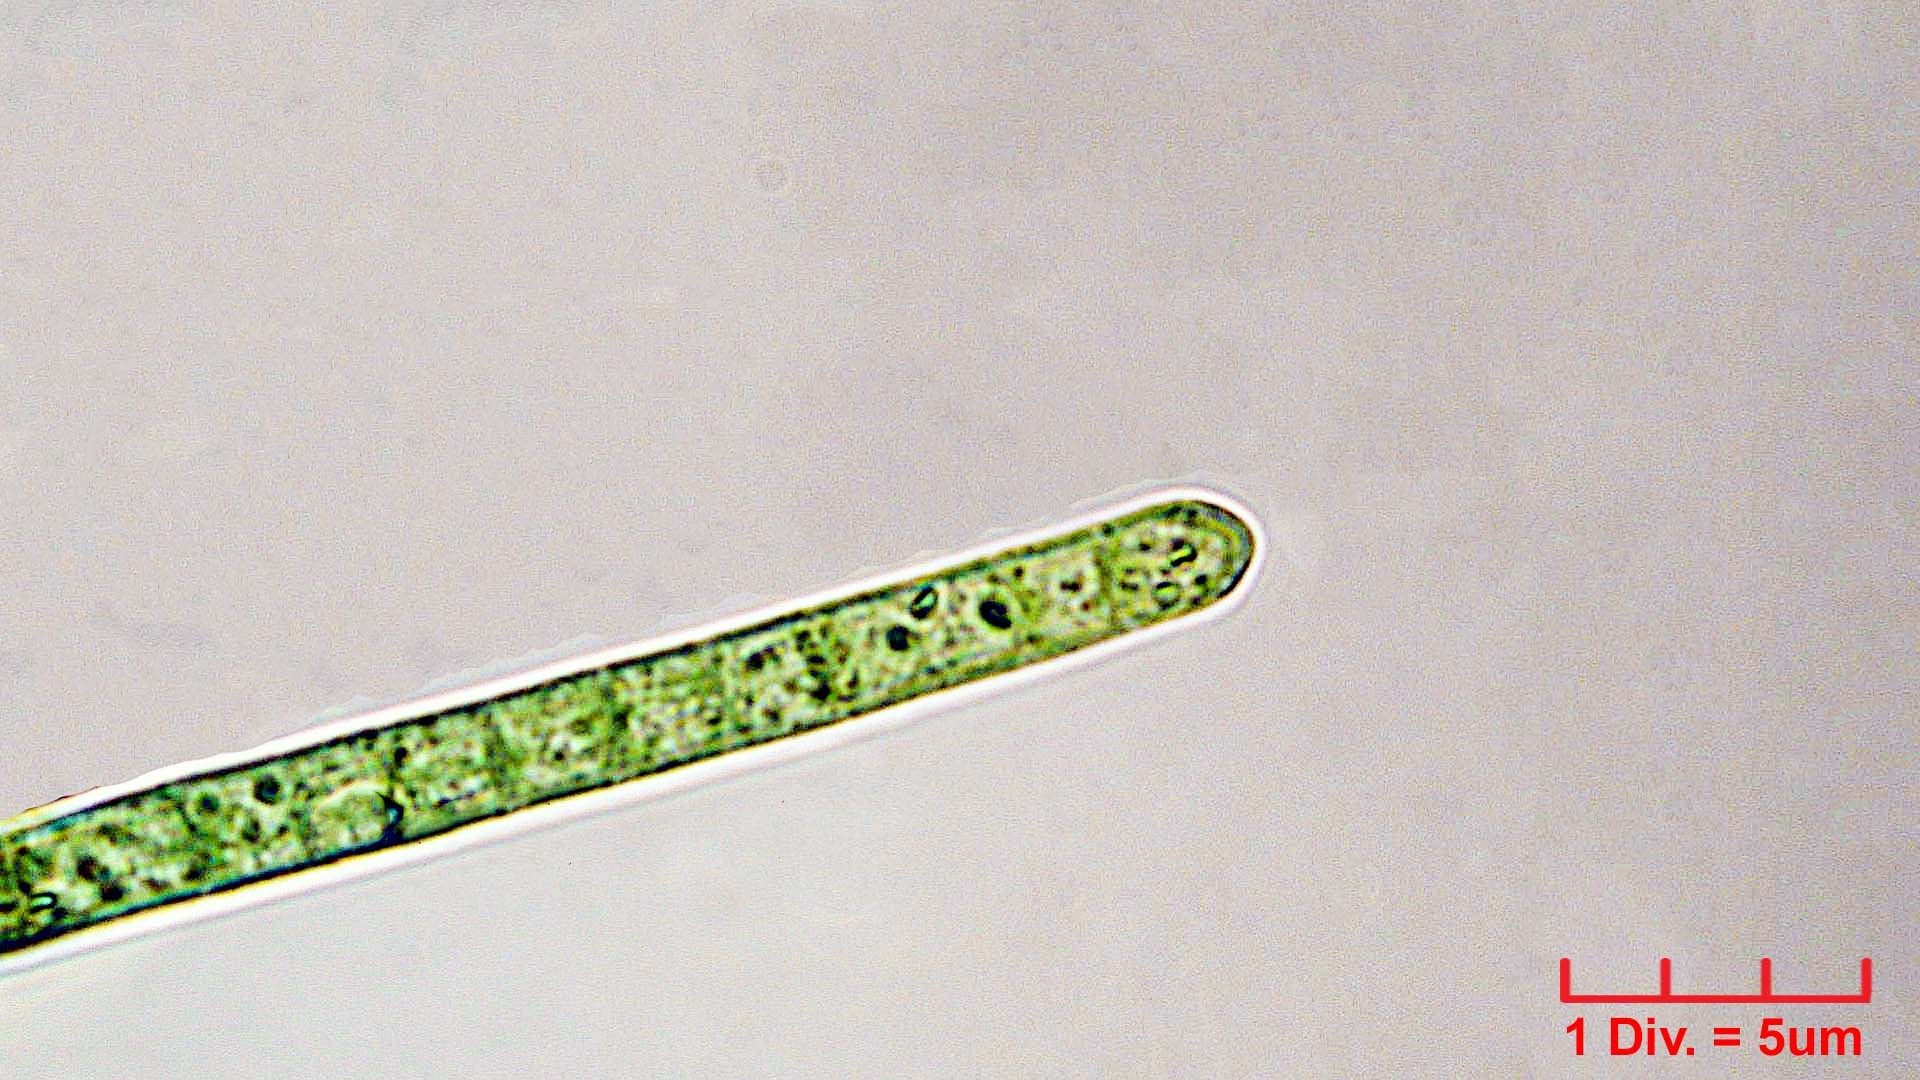 ././././Cyanobacteria/Oscillatoriales/Oscillatoriaceae/Phormidium/retzii/phormidium-retzii-234.jpg